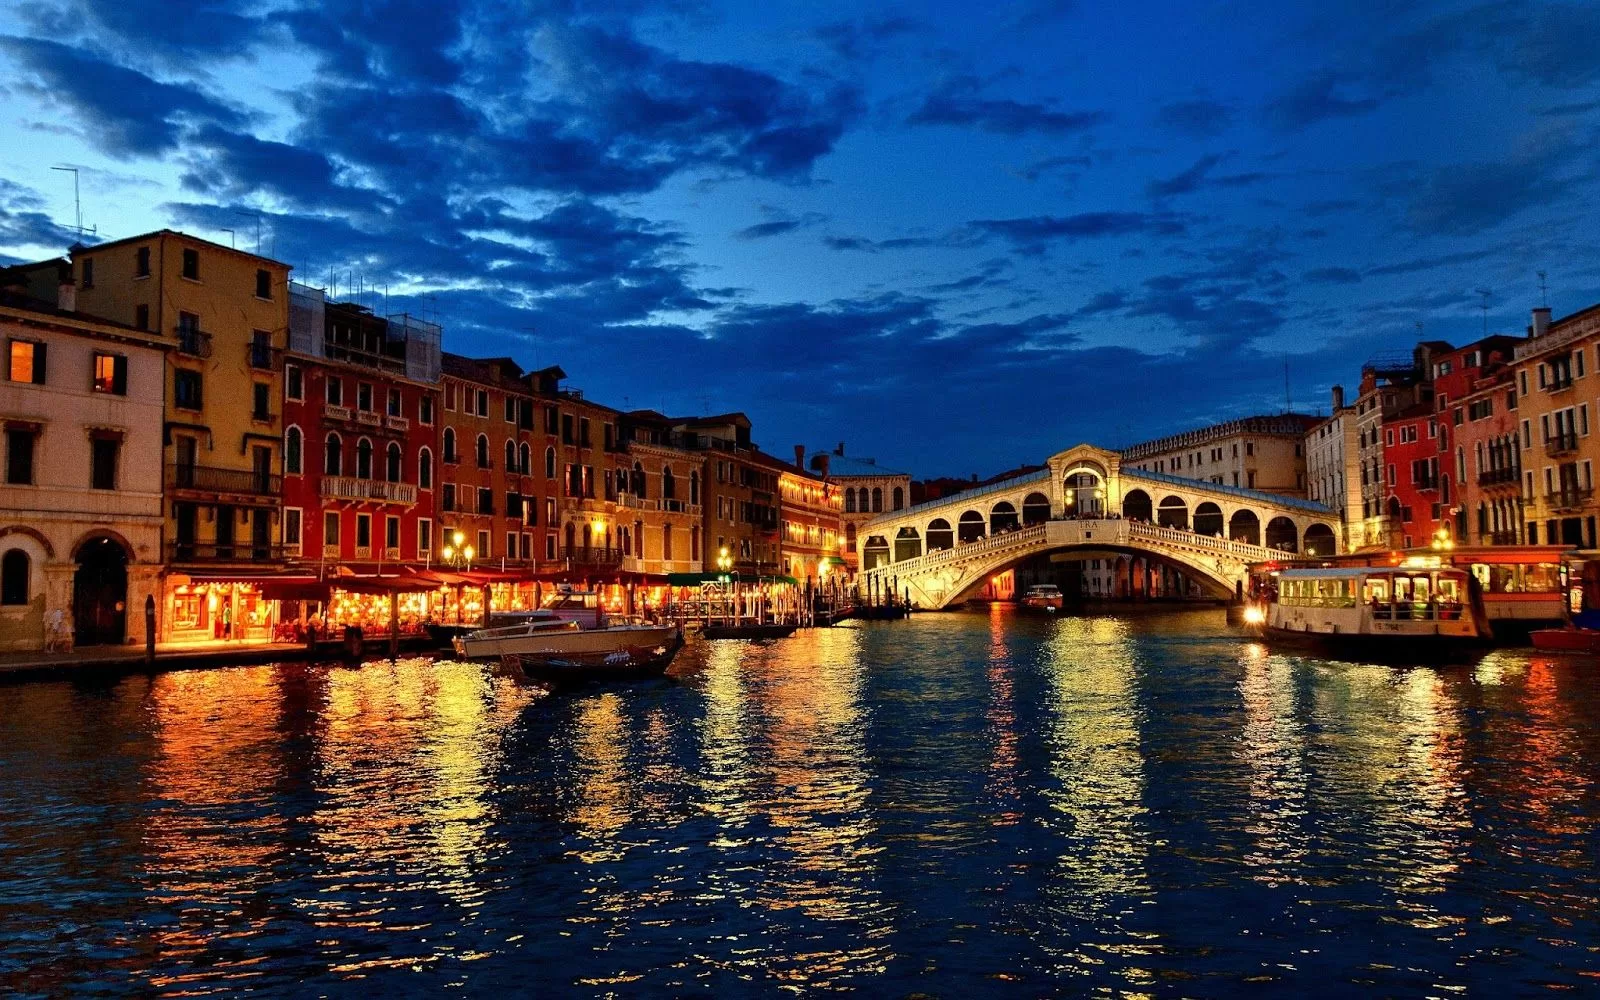 Turist akınının düzenlenmesi amacıyla Venedik yeni önlemler alıyor.